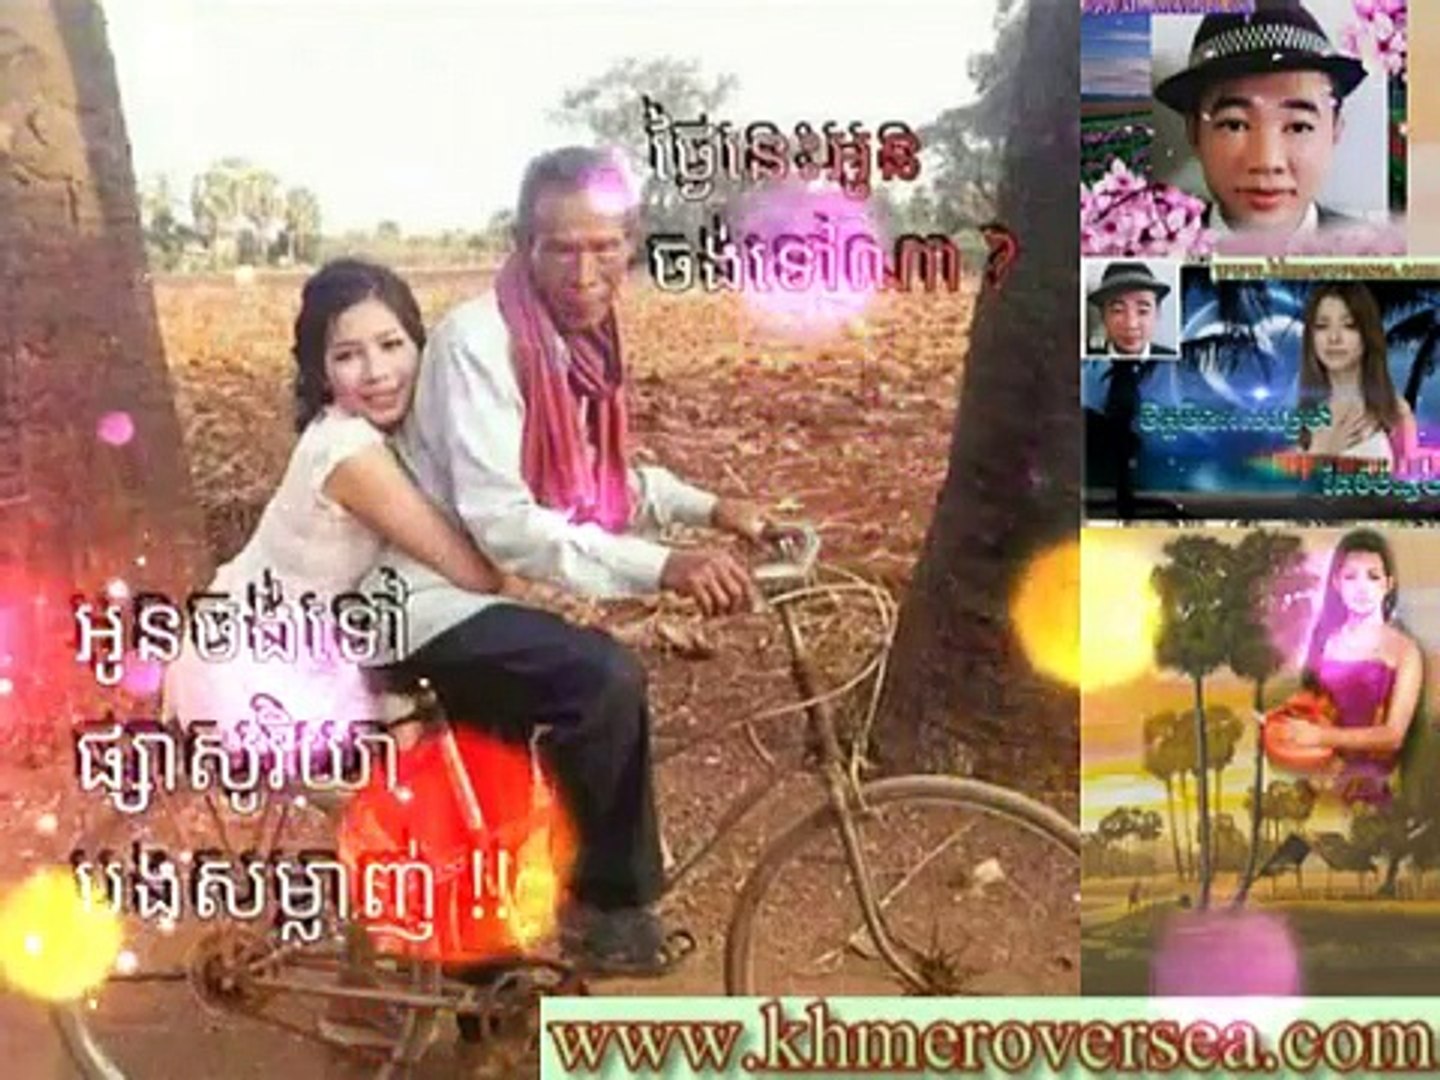 Khmer Over Sea Khmer Mews Khmer Music Khmer Song Cambodia News